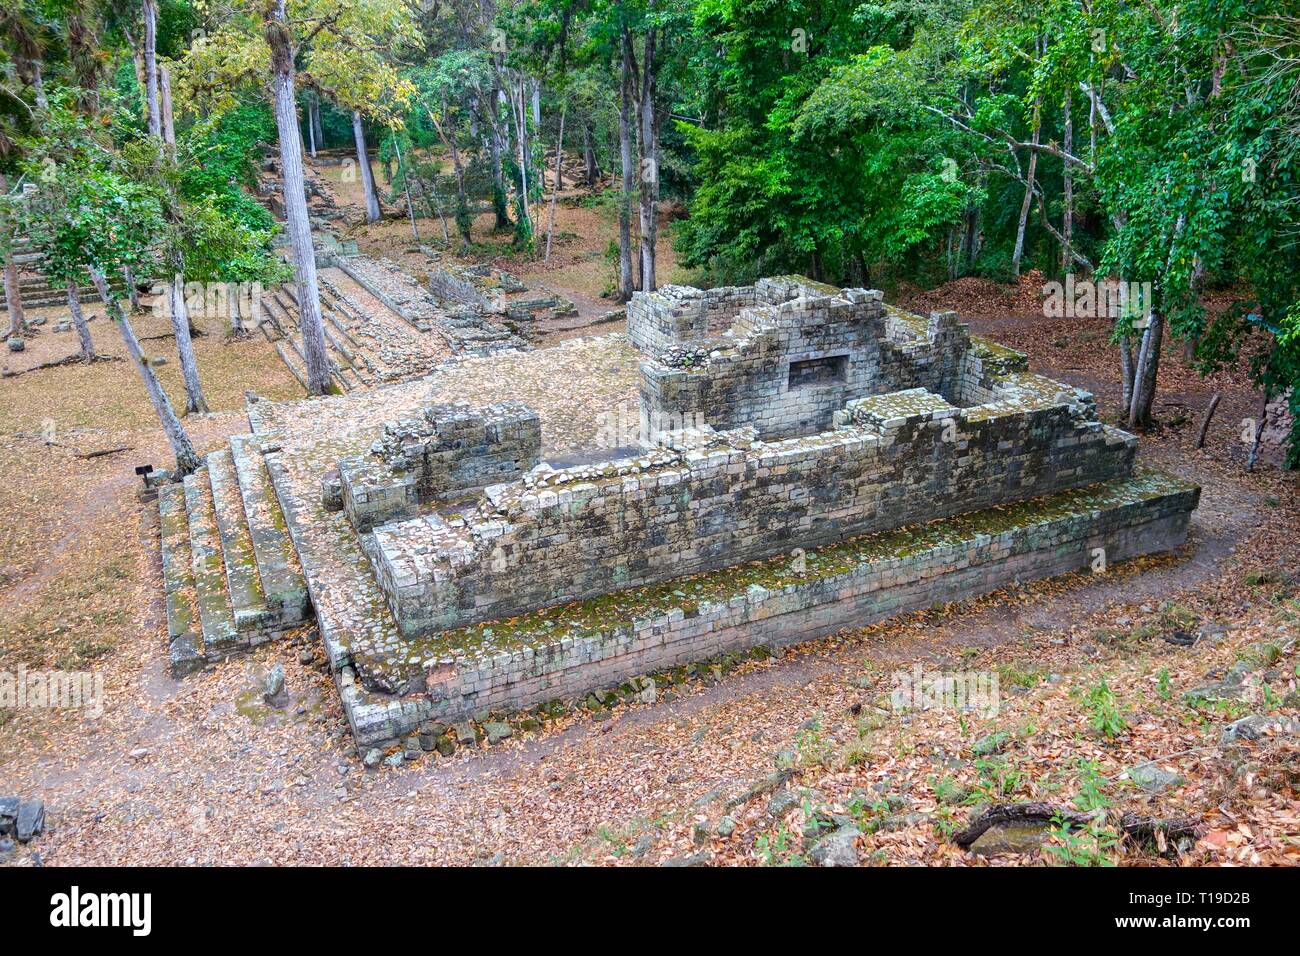 Famosa in tutto il mondo Copan rovine sito archeologico dell'antica civiltà Maya, un sito Patrimonio Mondiale dell'UNESCO in Honduras vicino al confine del Guatemala Foto Stock